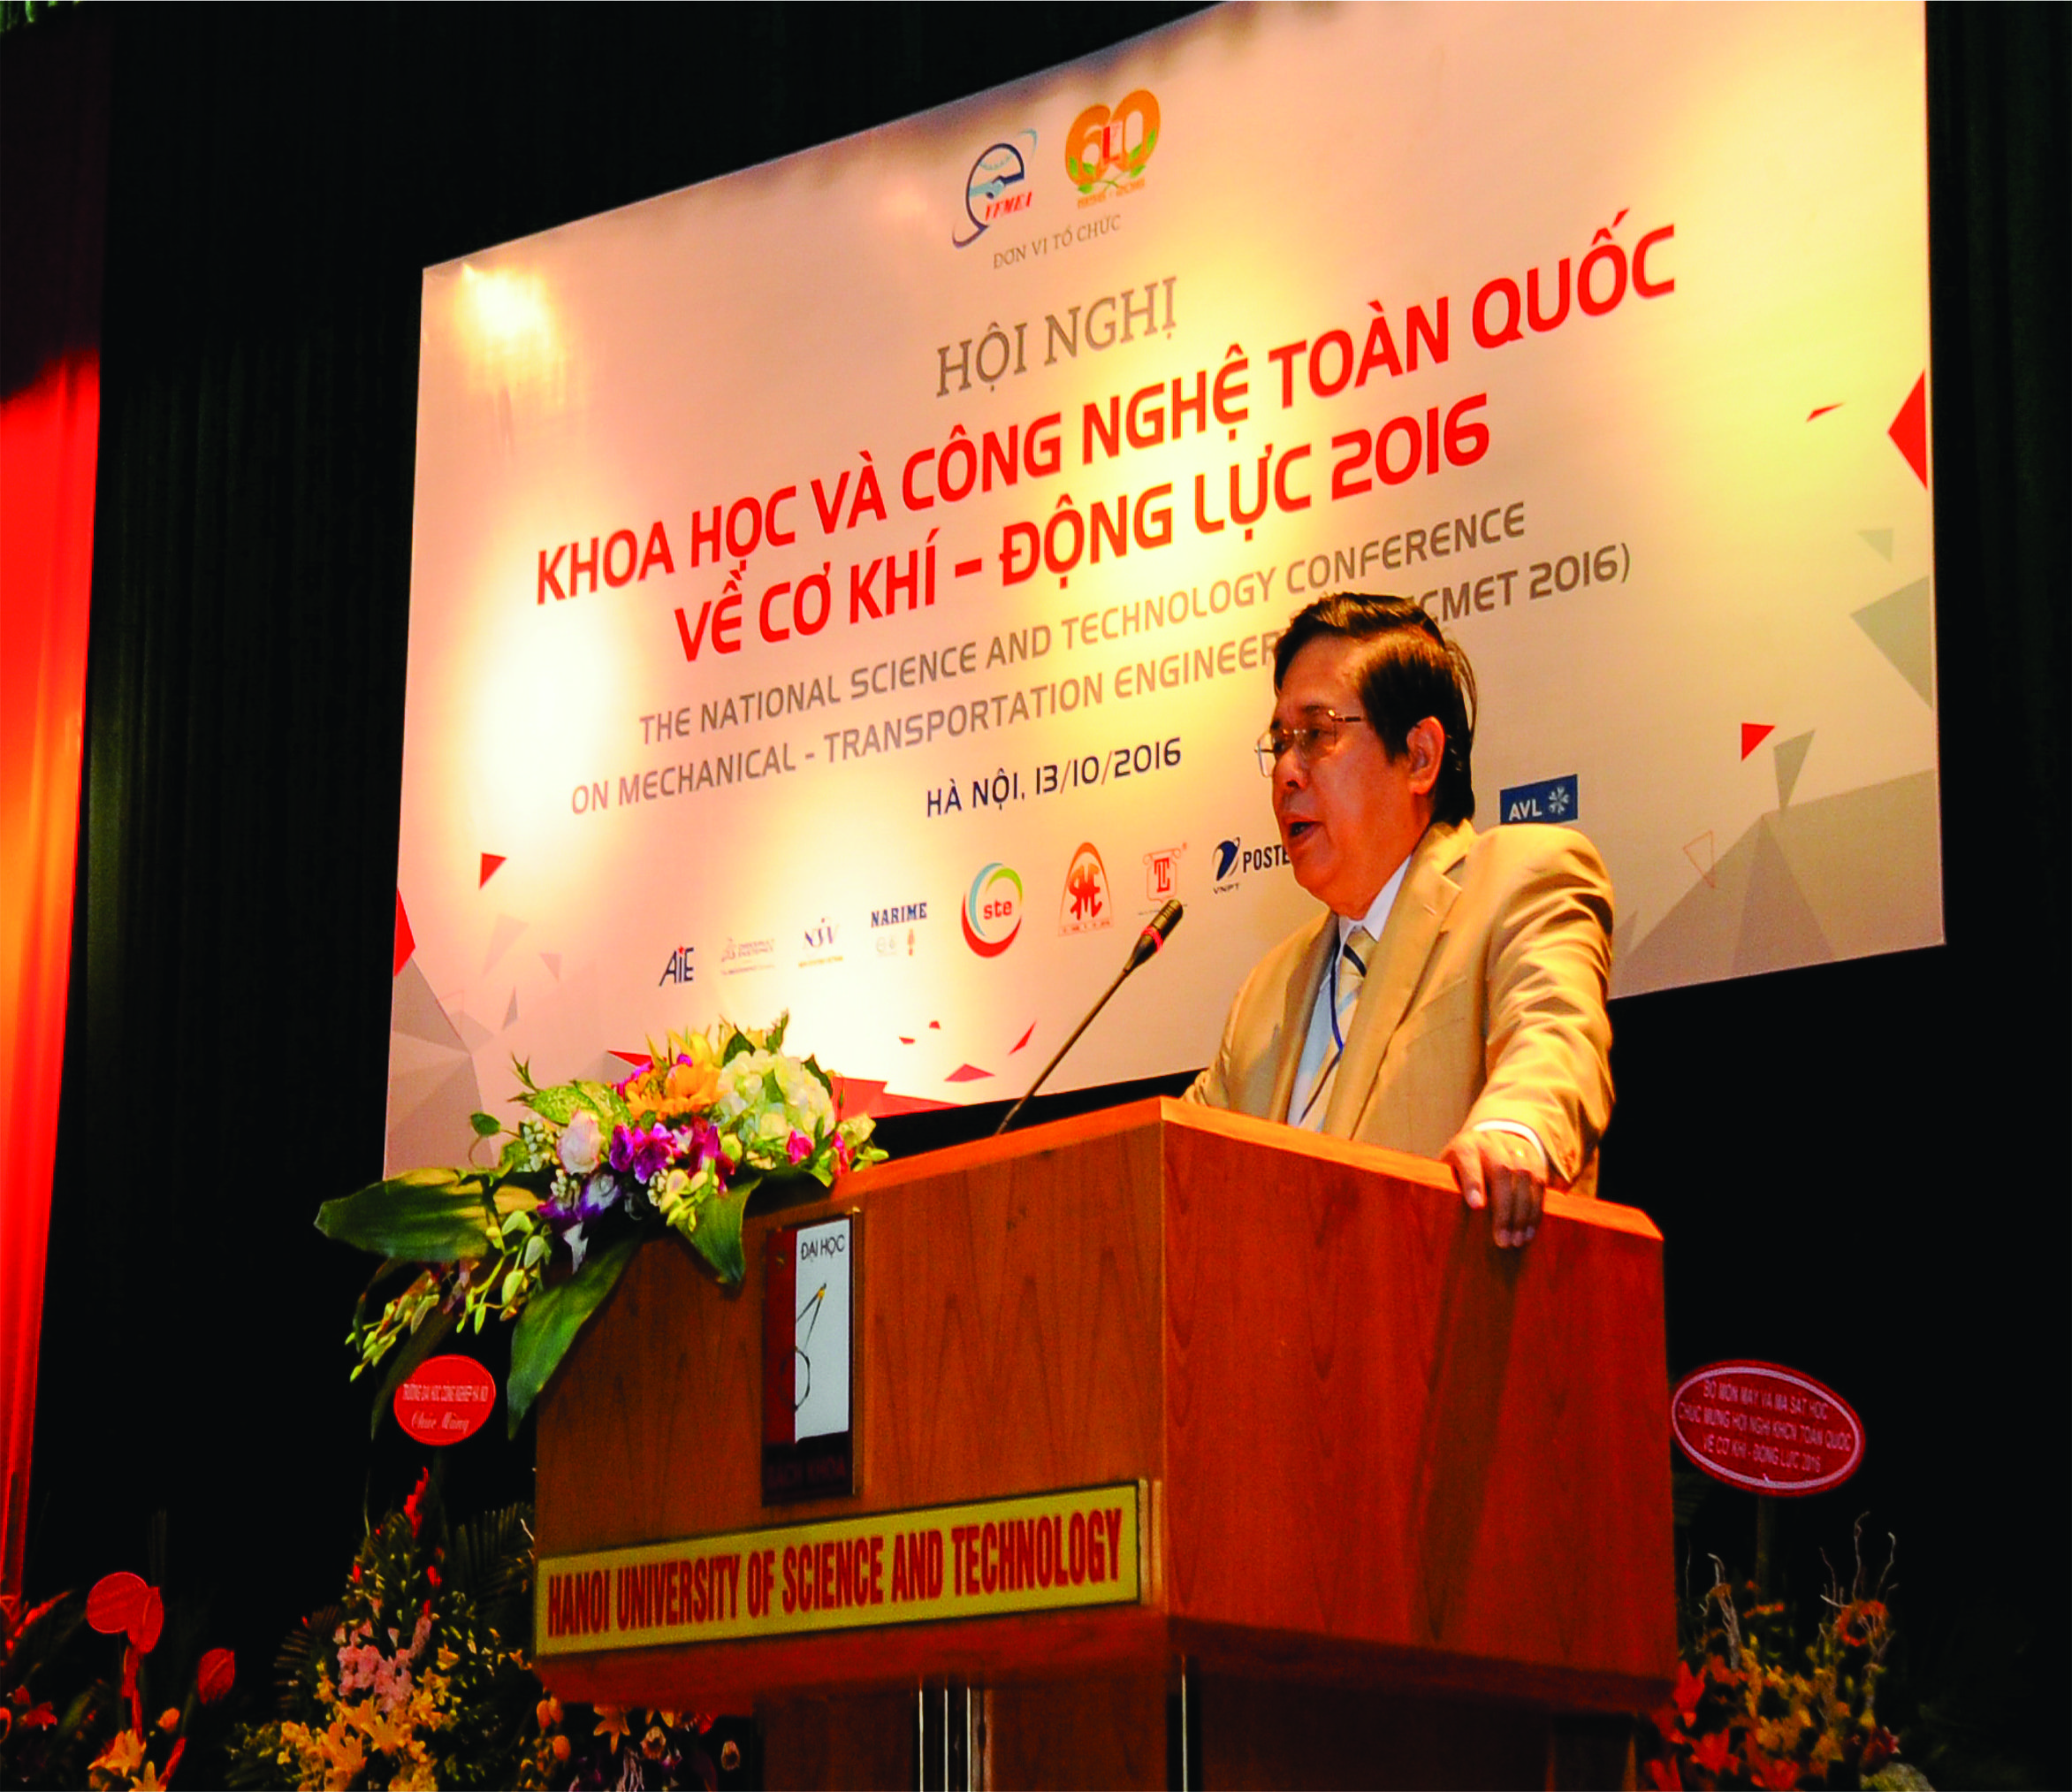 Tổng hội Cơ khí Việt Nam: Tổ chức Hội nghị Khoa học và Công nghệ toàn quốc về Cơ khí – Động lực 2016